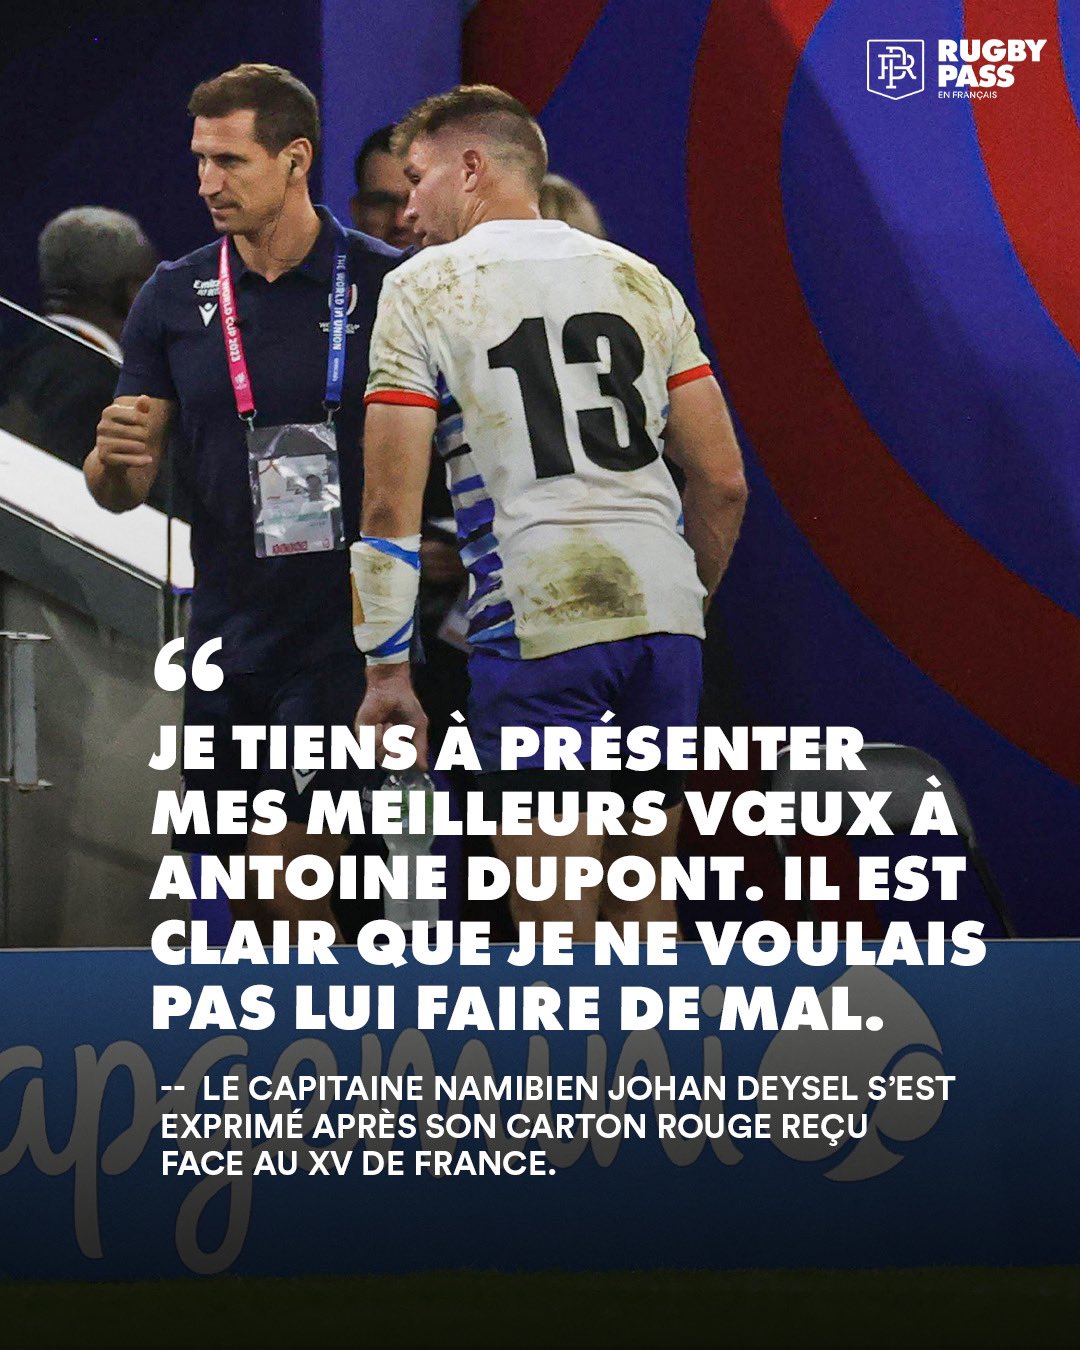 RugbyPass FR 🇫🇷 on X: "Les mots de Johan Deysel après son carton rouge  reçu face au XV de France #RWC2023 | #FRAvNAM https://t.co/AuWa3diIjX" / X